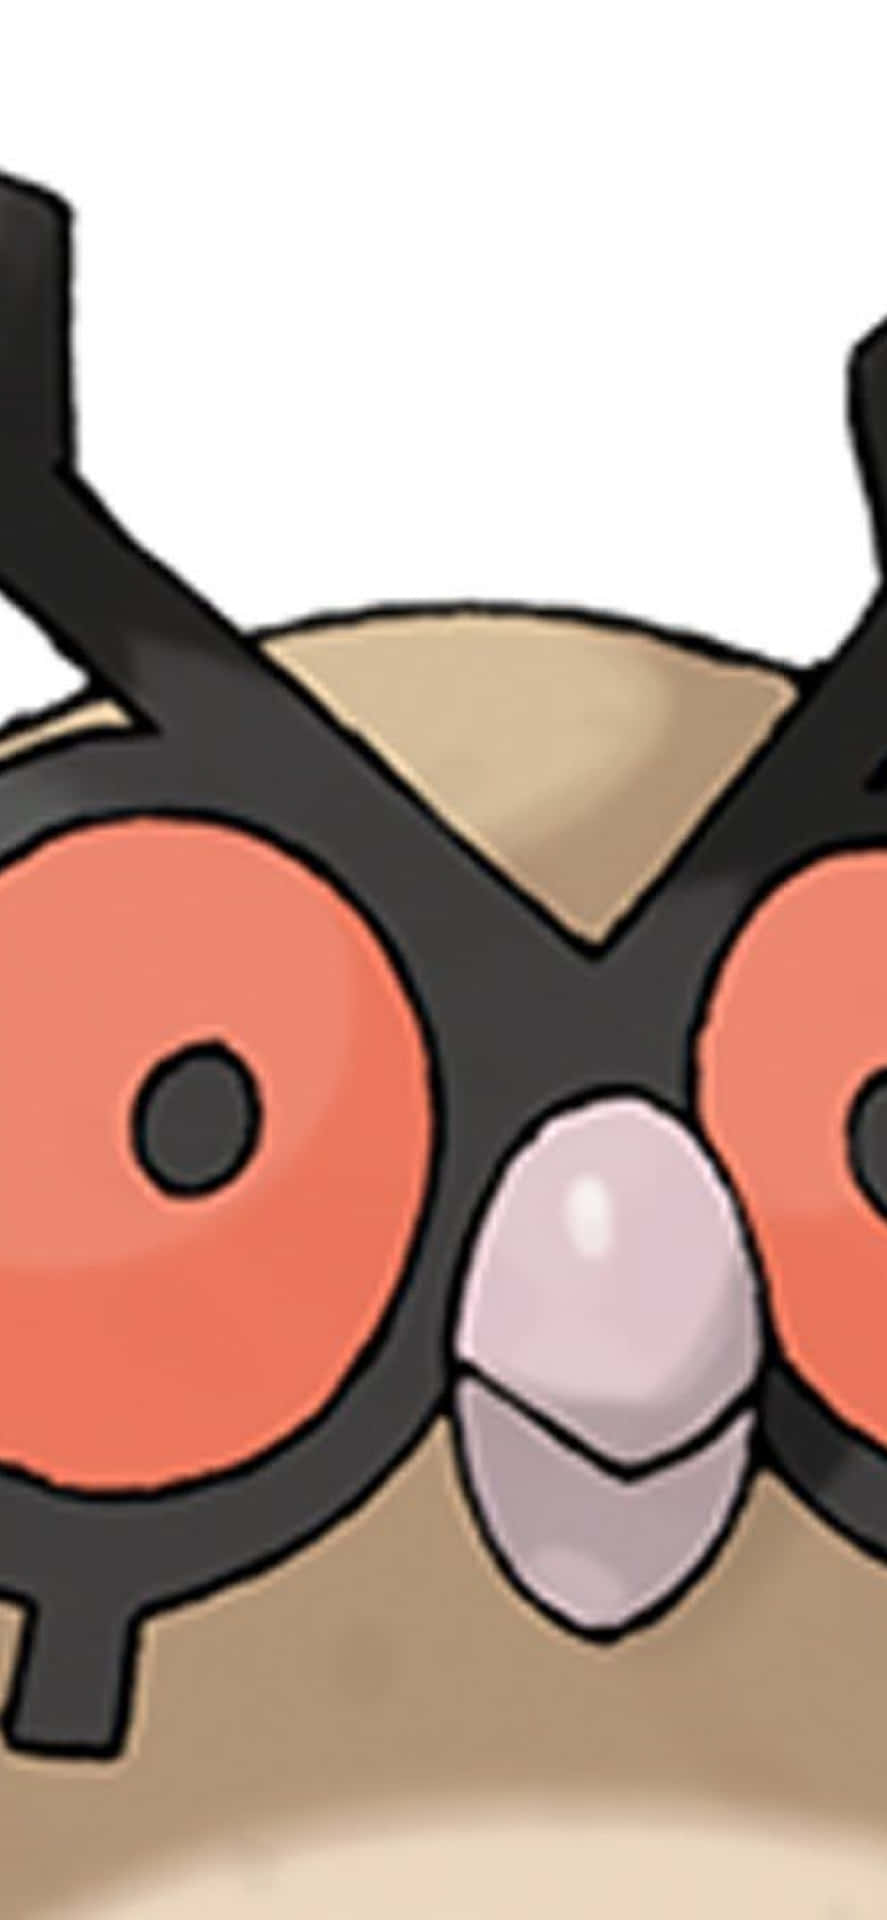 Pokémonhoothoot De Perto, Vista De Frente - Papel De Parede Para Computador Ou Celular. Papel de Parede